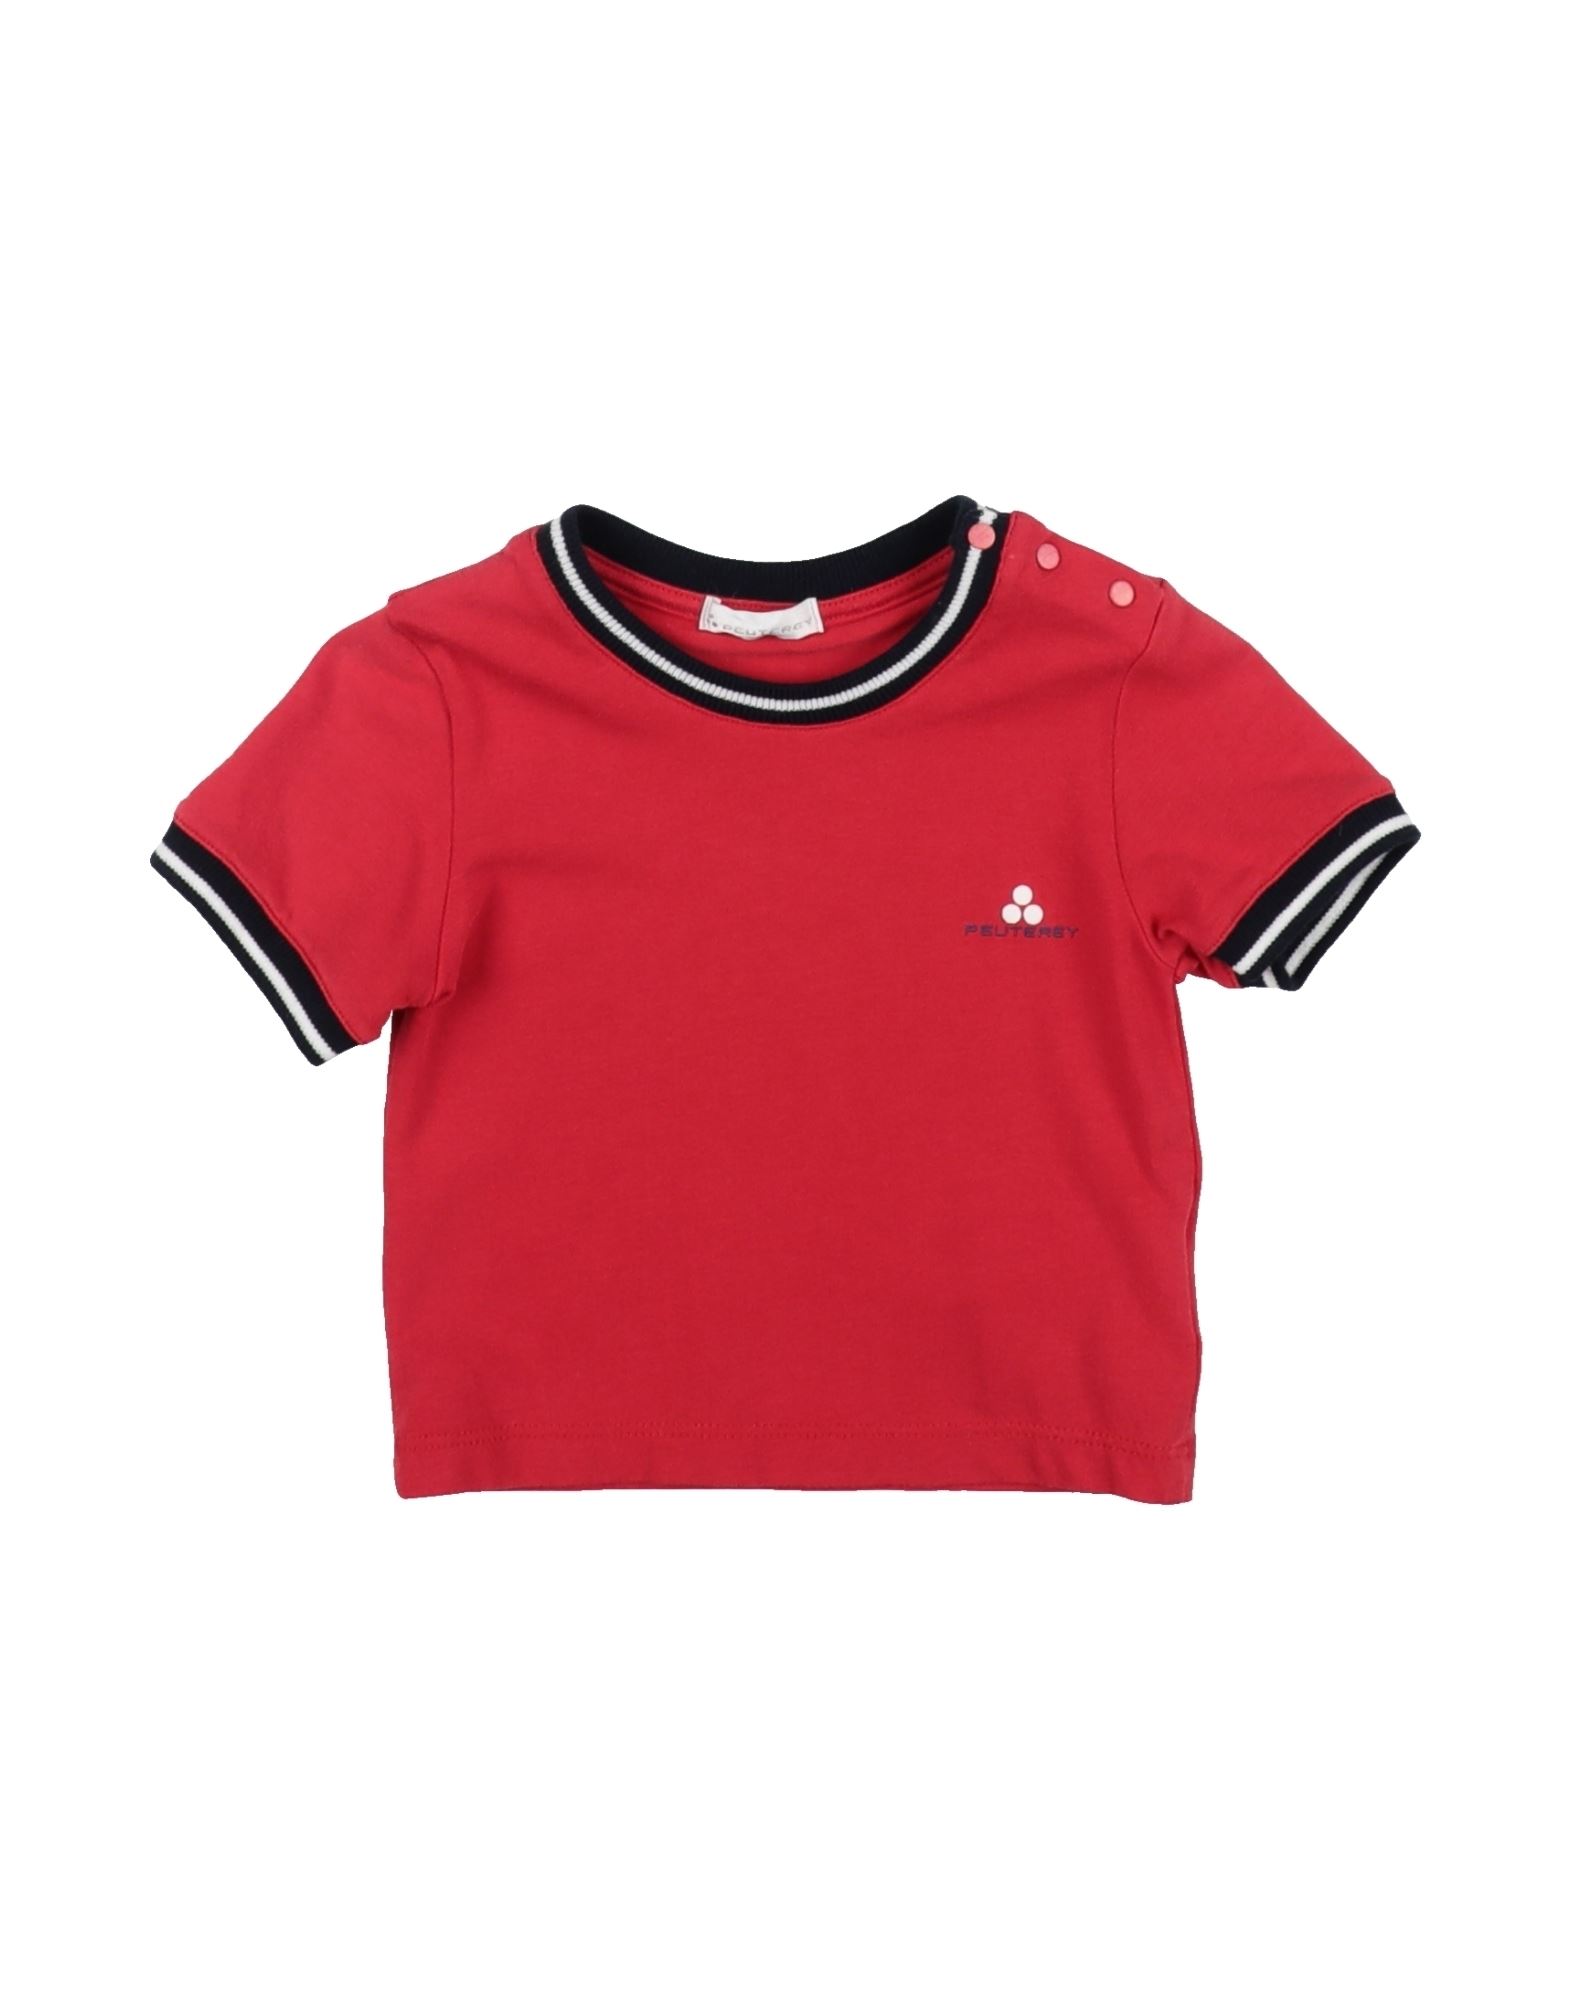 PEUTEREY T-shirts Kinder Rot von PEUTEREY